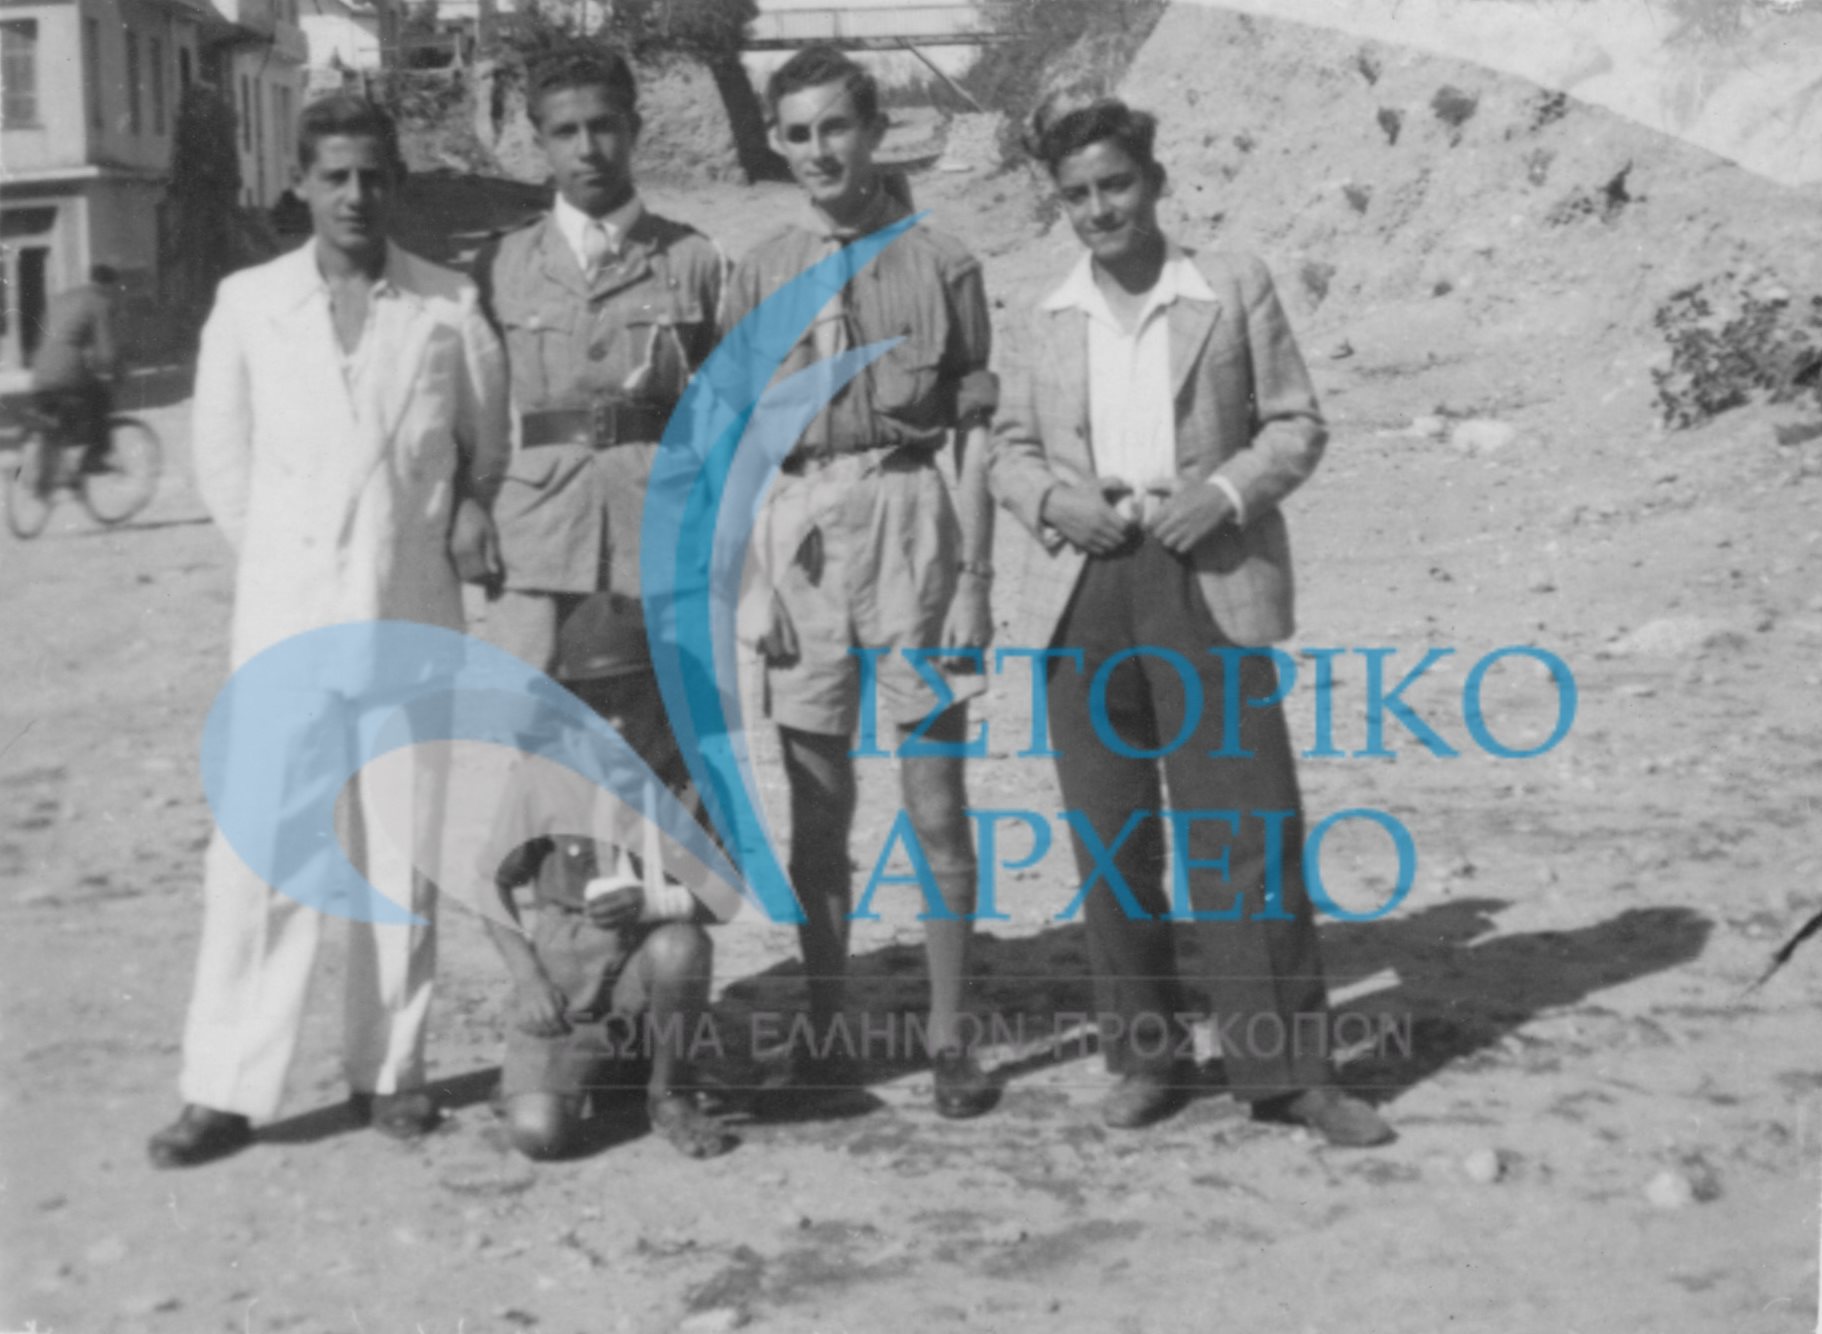 Συντροφιά προσκόπων στην Αθήνα μετά την επασύσταση του ΣΕΠ το 1945. Διακρίνεται στη μέση ο Ν. Κατσαρέλης.